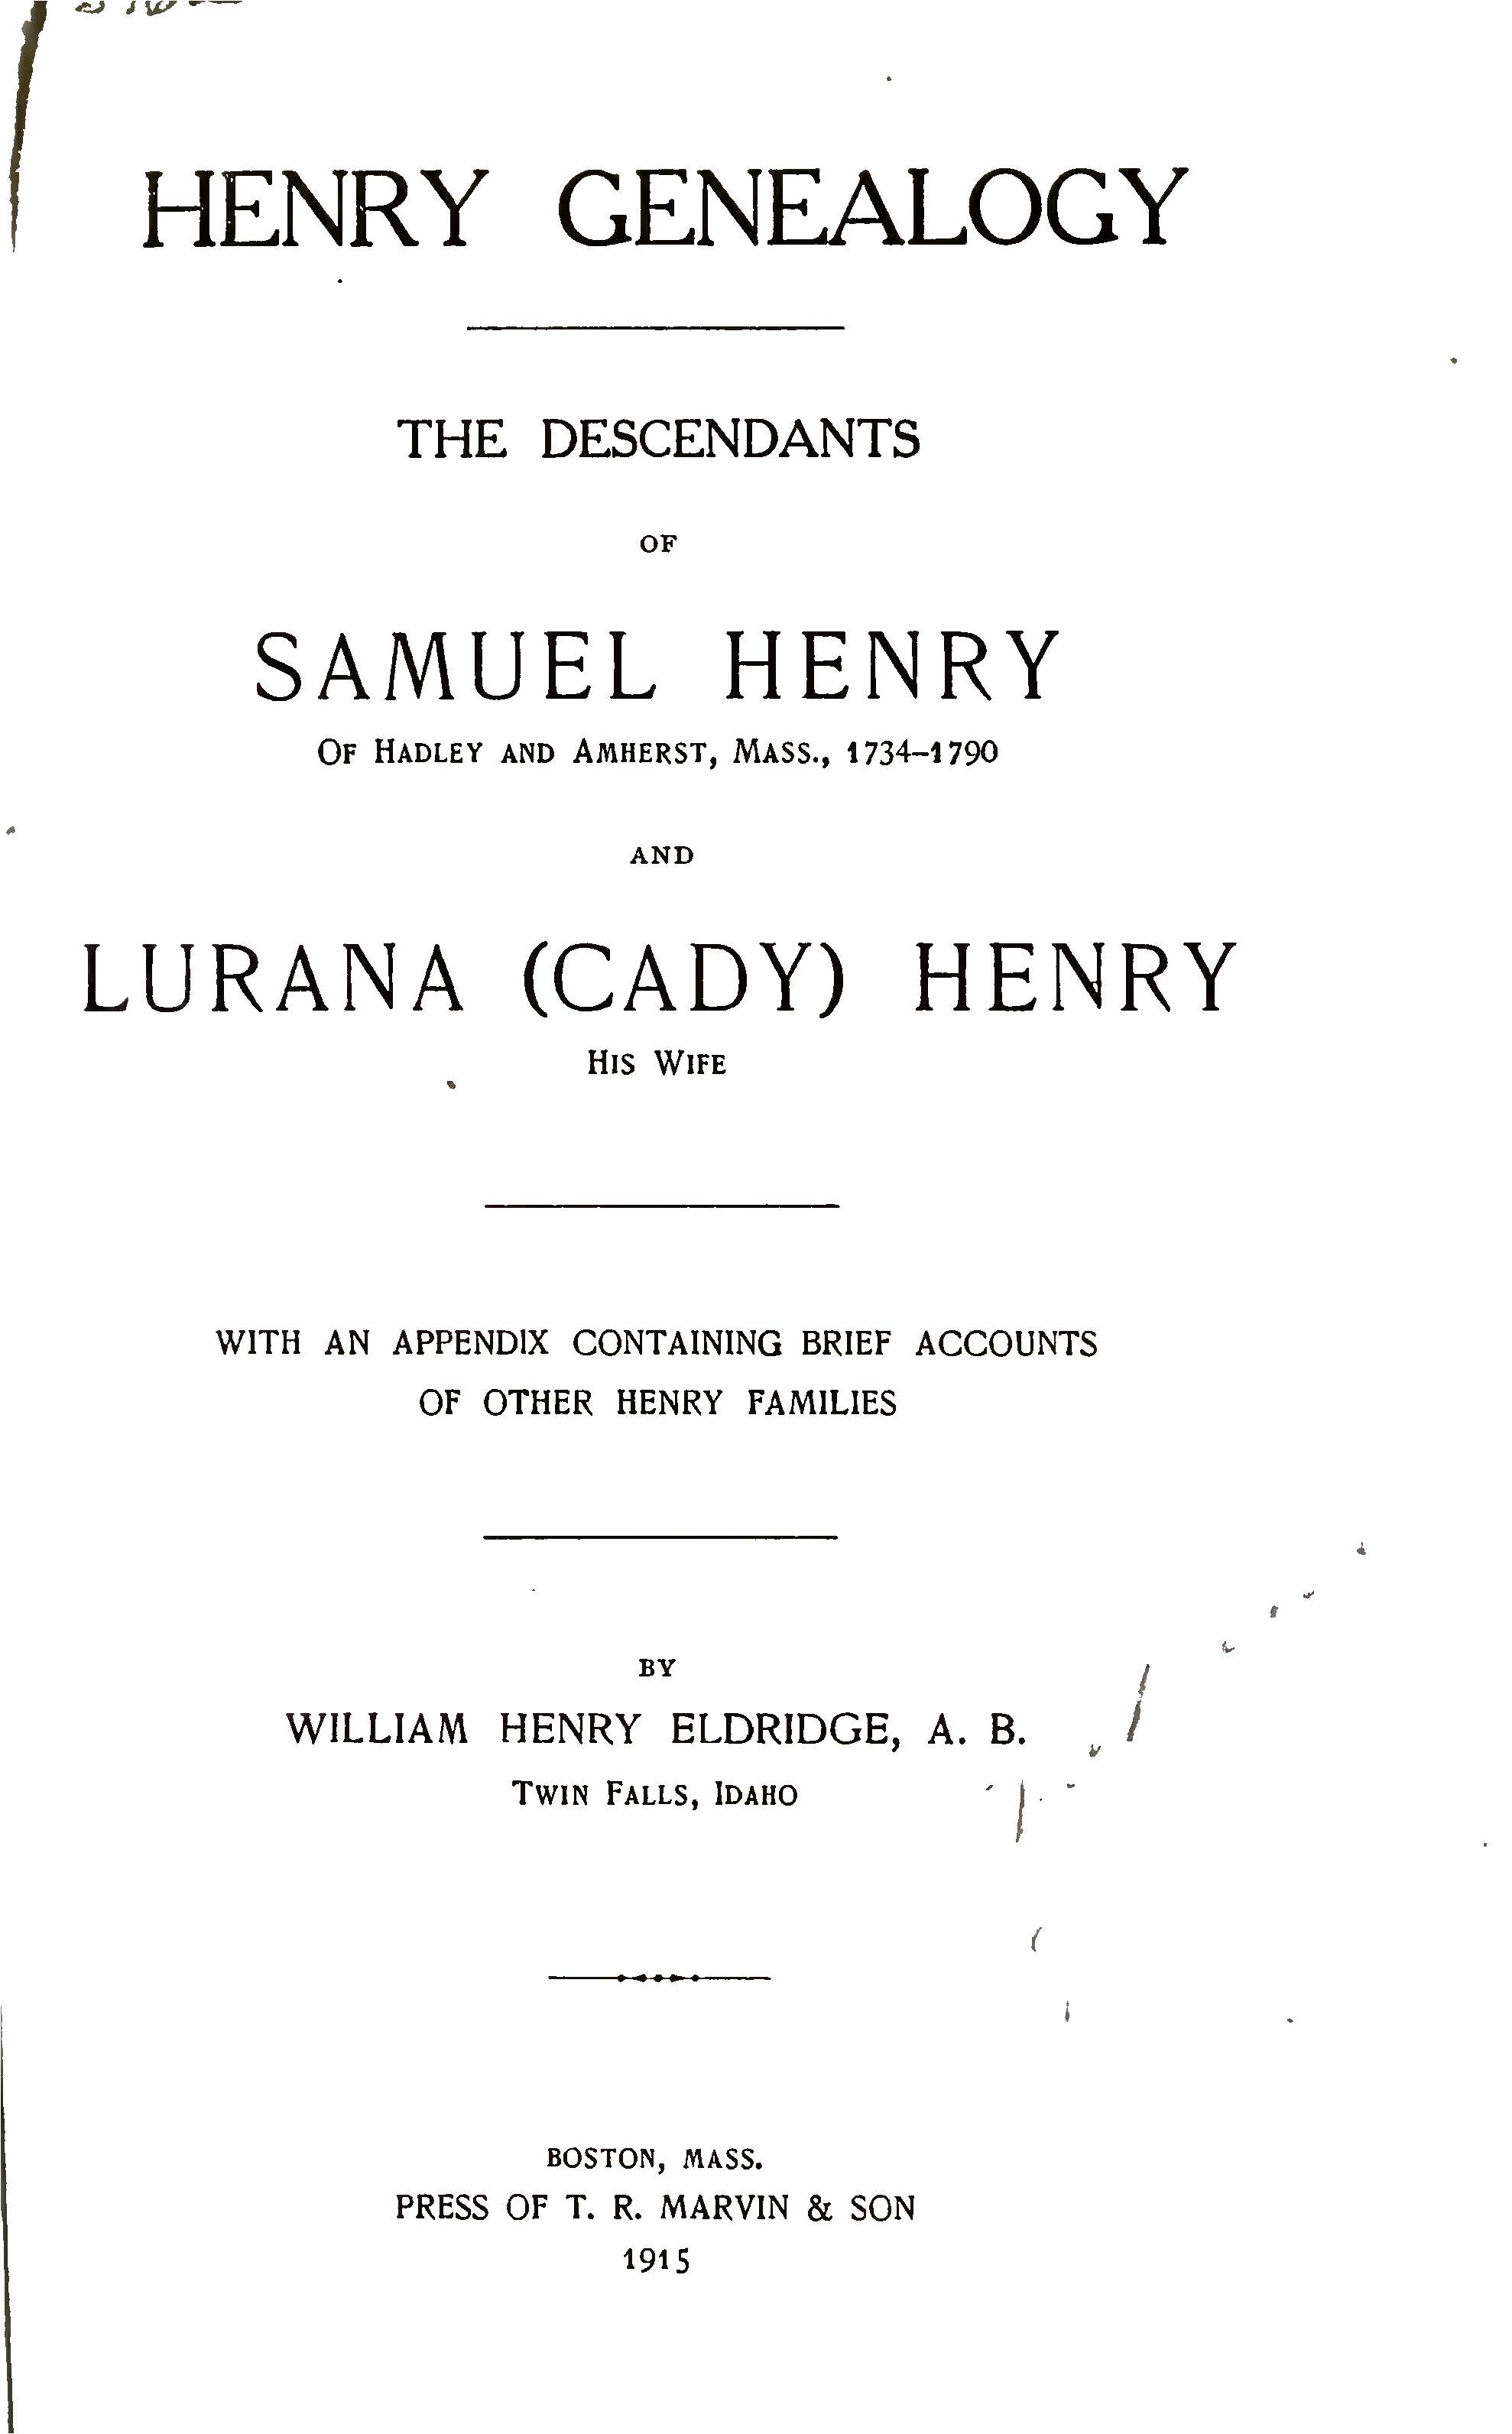 Henry Genealogy : The descendants of Samuel Henry of Hadley and Amherst, Massachusetts, 1734-1790